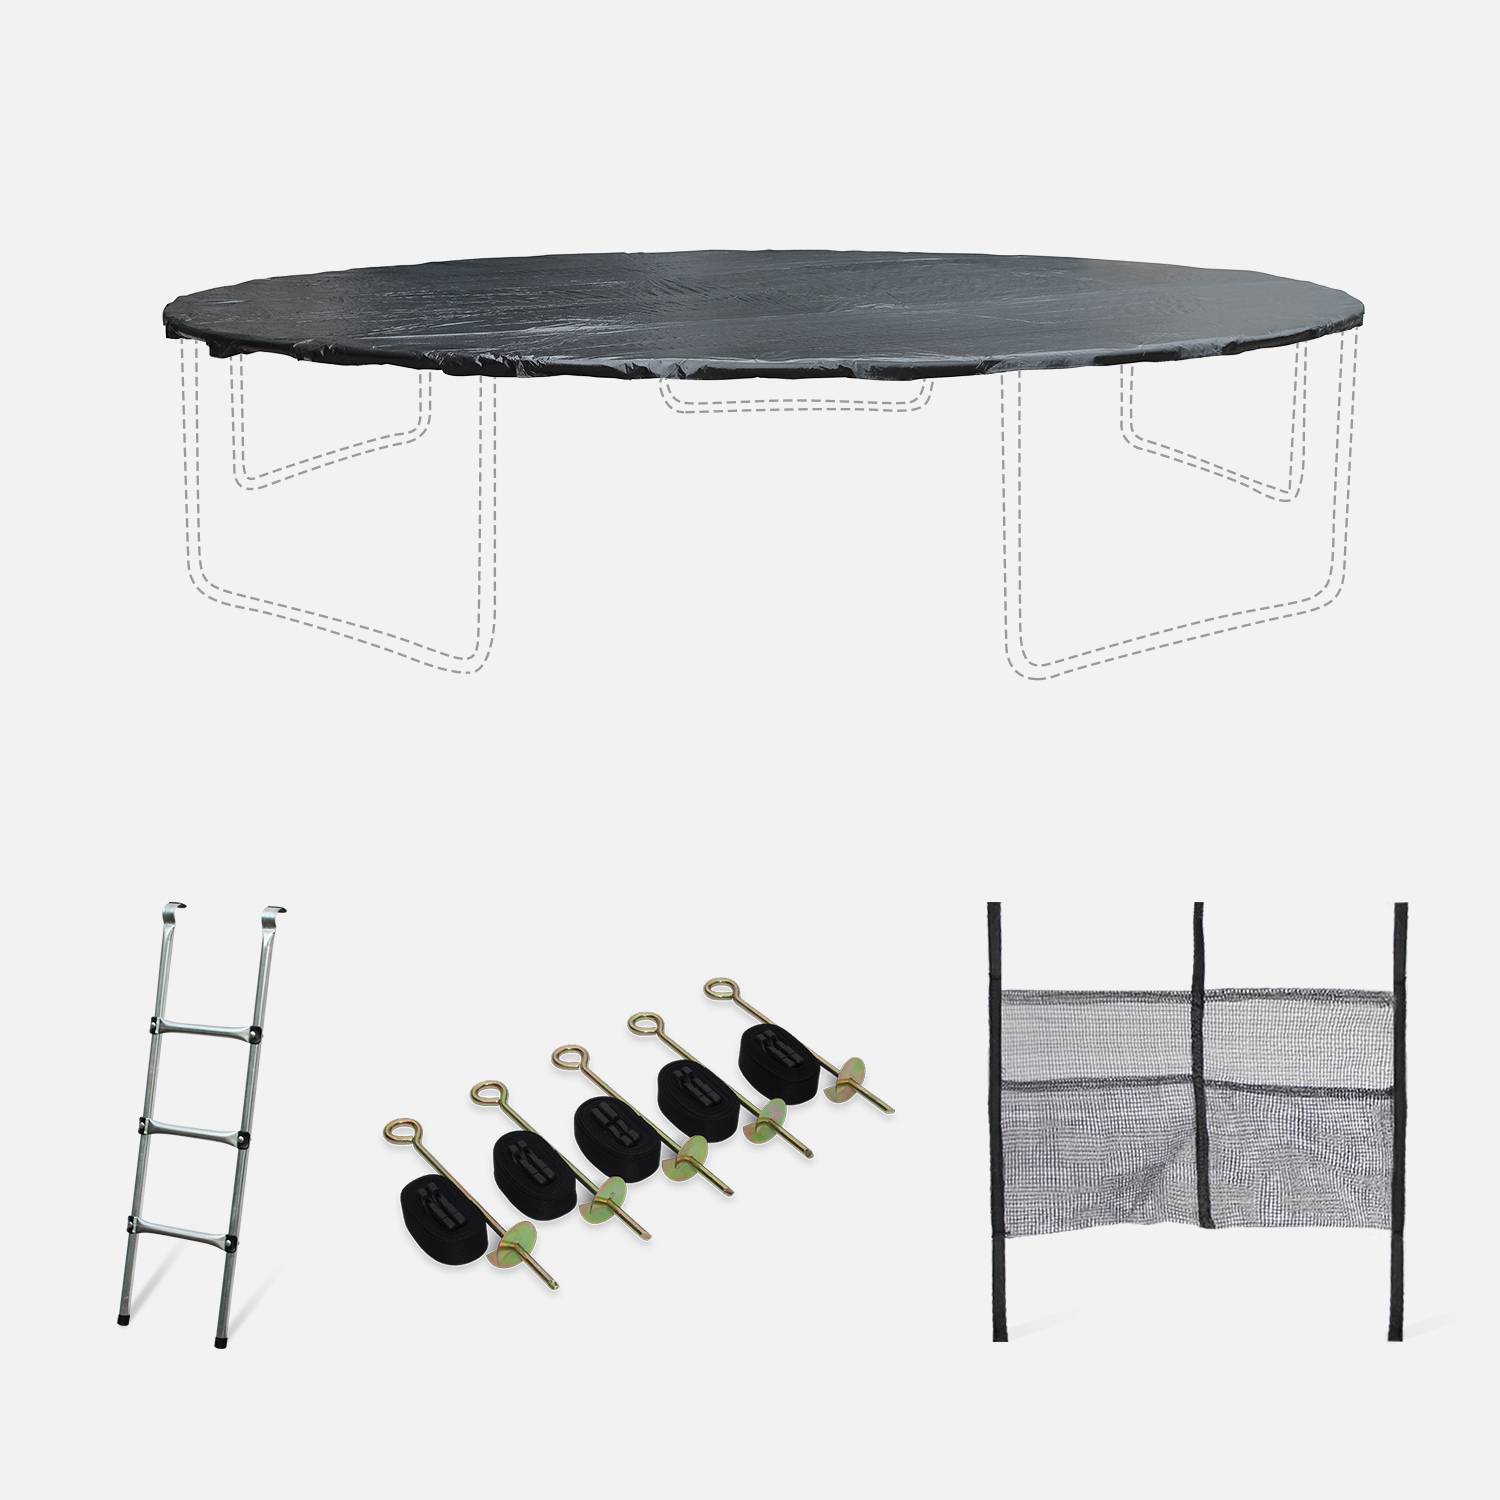 Pakket met accessoires voor trampoline Ø460cm Neptune met een ladder, een beschermhoes, een opbergnet voor schoenen en een verankeringskit Photo1